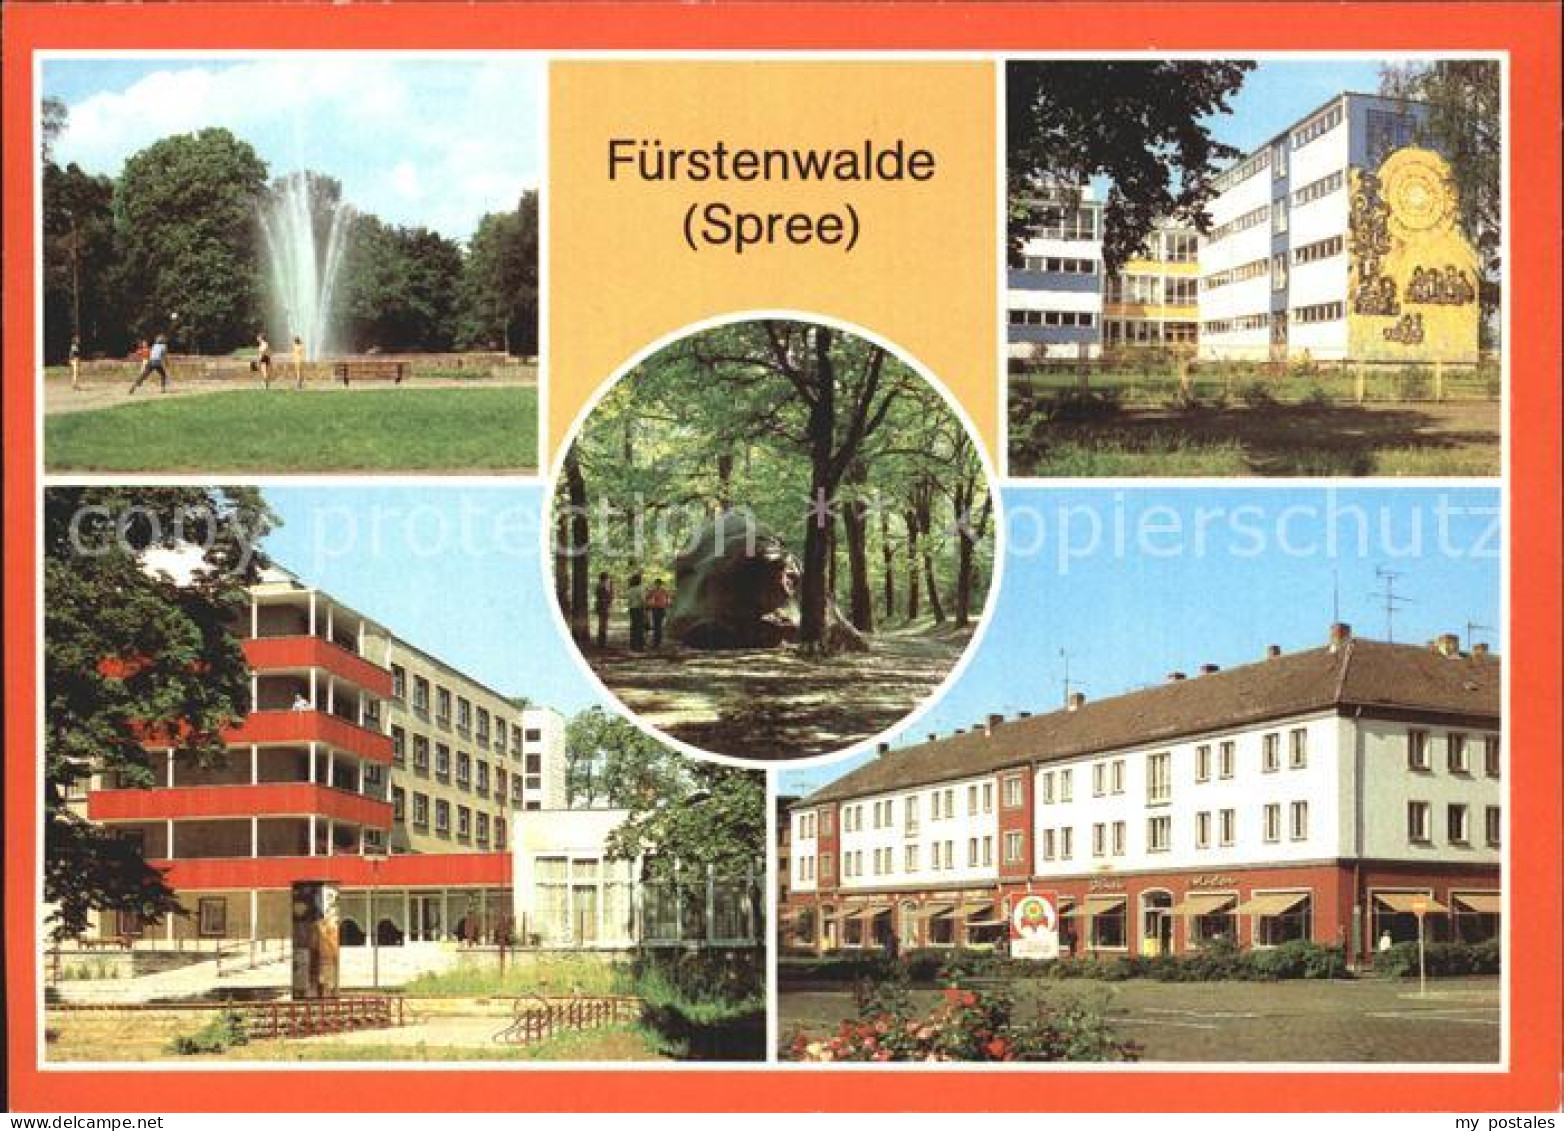 72373058 Fuerstenwalde Spree Park Oberschule Feierabendheim Pflegeheim Rauensche - Fürstenwalde